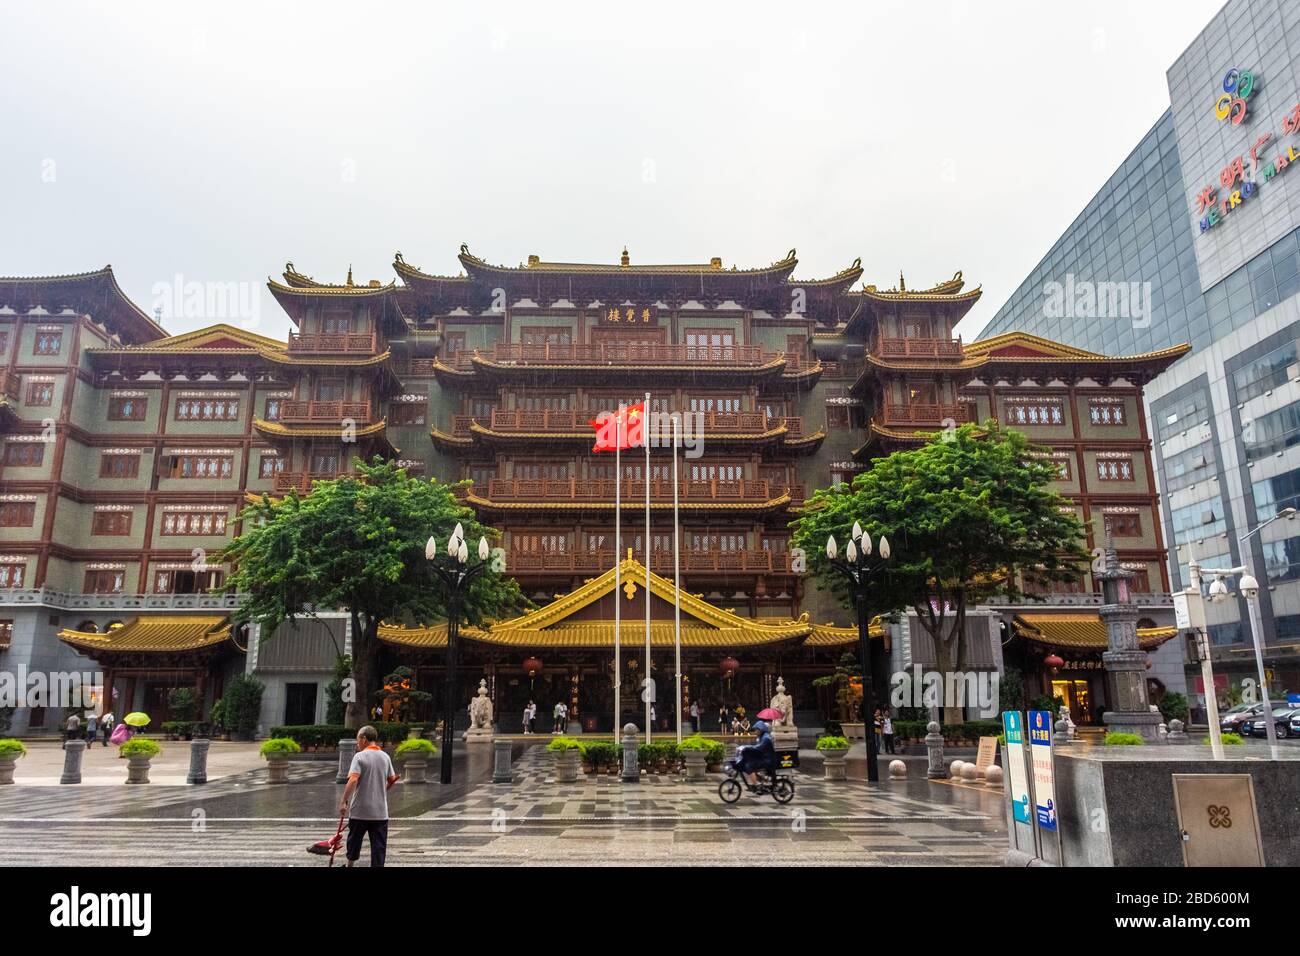 GUANGZHOU, CHINA, 18 NOVEMBER 2019: Big Buddha Temple of Guangzhou Stock Photo